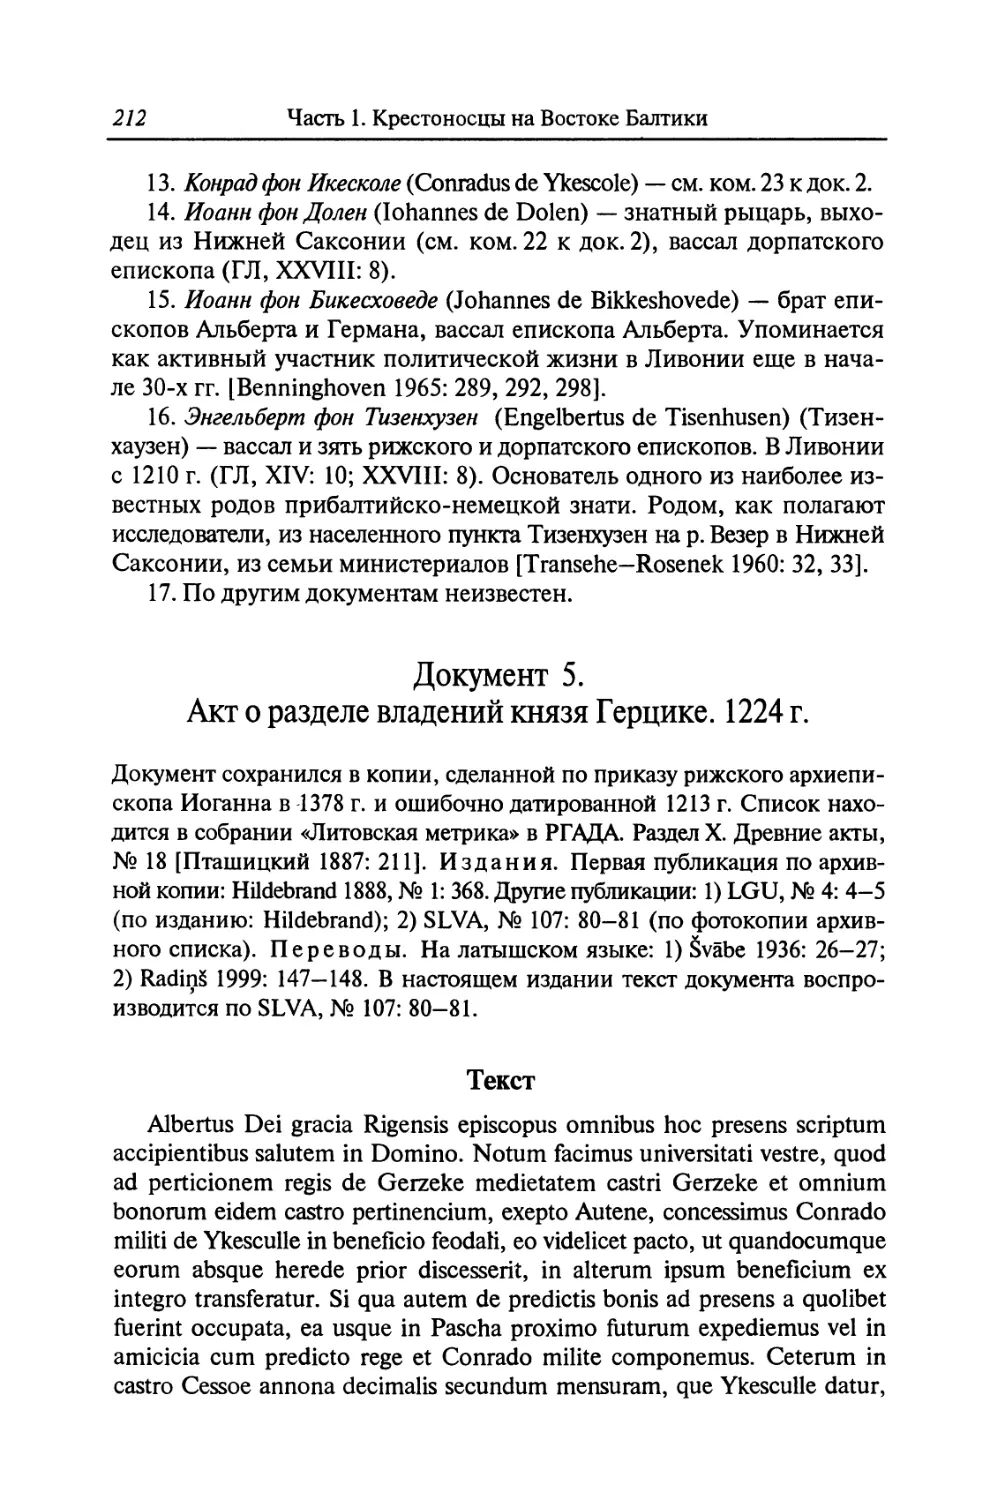 Документ 5. Акт о разделе владений князя Герцике. 1224 г.